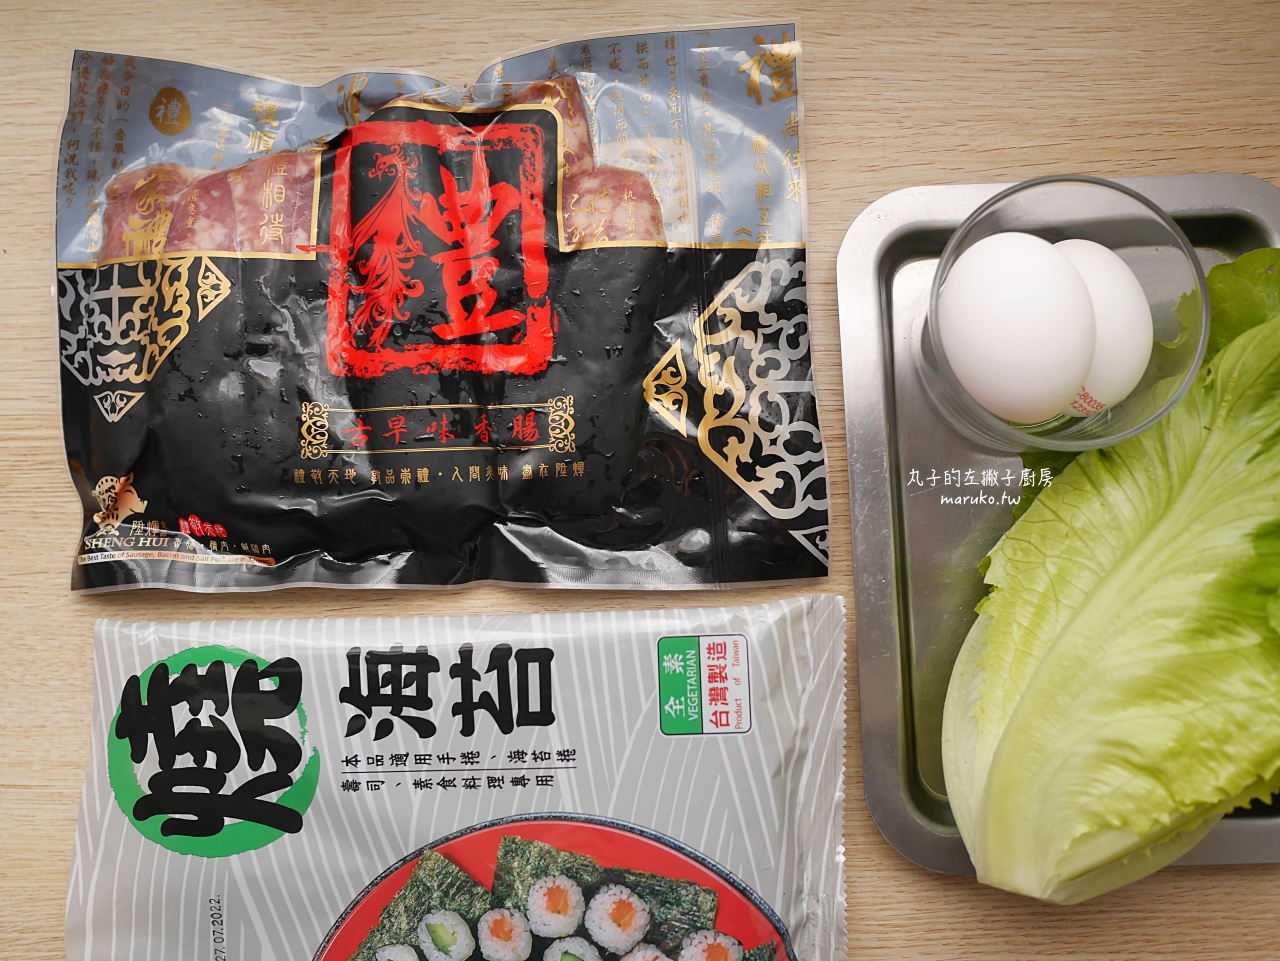 【食譜】香腸紫菜包飯 把香腸捲起來吃 清爽營養的午餐韓式飯捲做法 @Maruko與美食有個約會